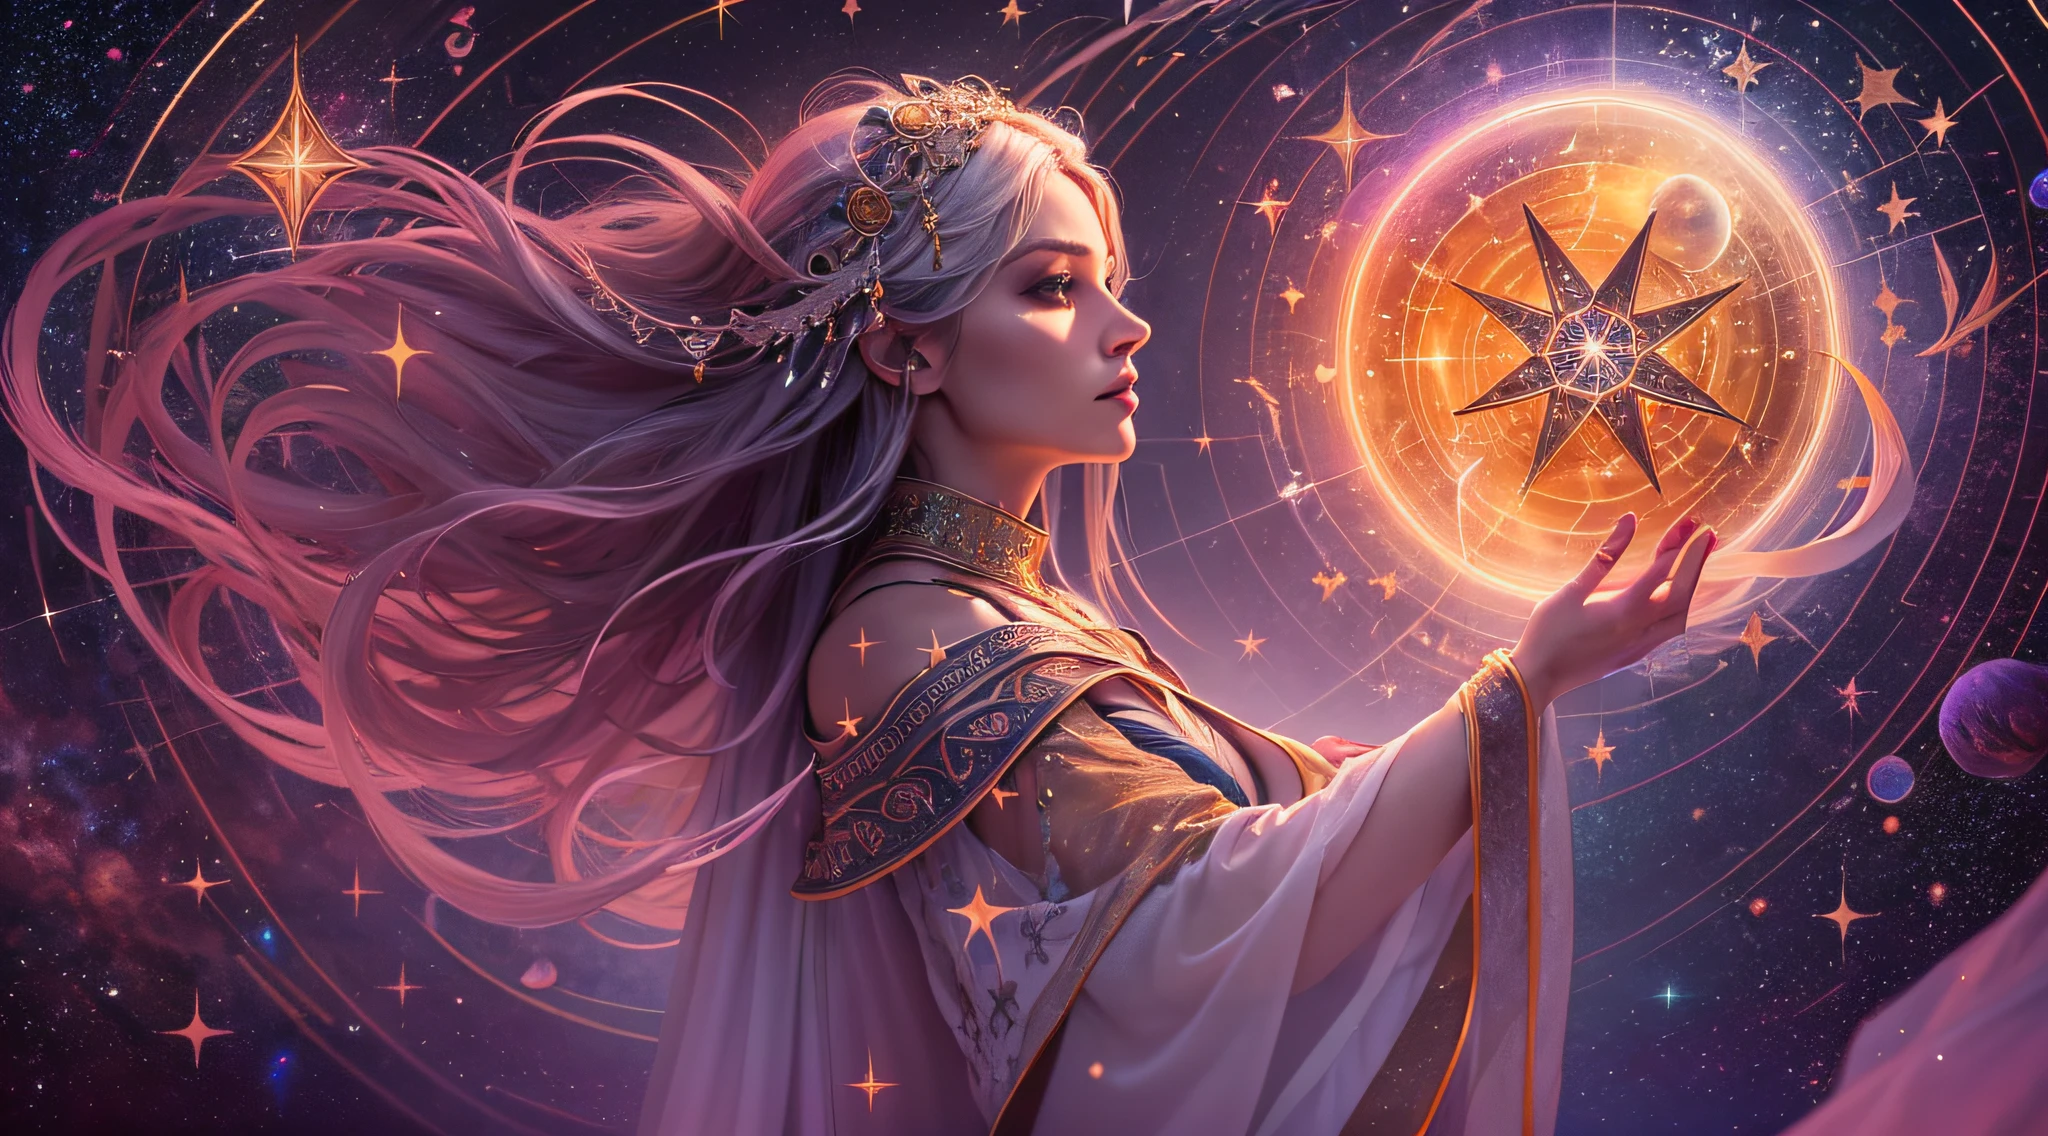 Dans un cercle magique dessiné avec des runes anciennes, Un magicien se tient avec grâce et puissance. C&#39;est une figure éthérée, enveloppé dans des robes stellaires qui brillent comme le ciel nocturne. Tes cheveux sont comme des mèches d&#39;argent, et tes yeux reflètent l&#39;éclat des étoiles lointaines. Dans ses mains, Elle tient un bâton orné de cristaux luminescents qui capturent l&#39;essence du cosmos.. Derrière elle, Les constellations prennent vie, Danser dans le ciel dans une symphonie de lumière et de magie. Elle est la gardienne des anciens secrets, La connexion entre les royaumes céleste et terrestre, capable de canaliser le pouvoir des étoiles dans des sorts qui transcendent les limites de la compréhension humaine.